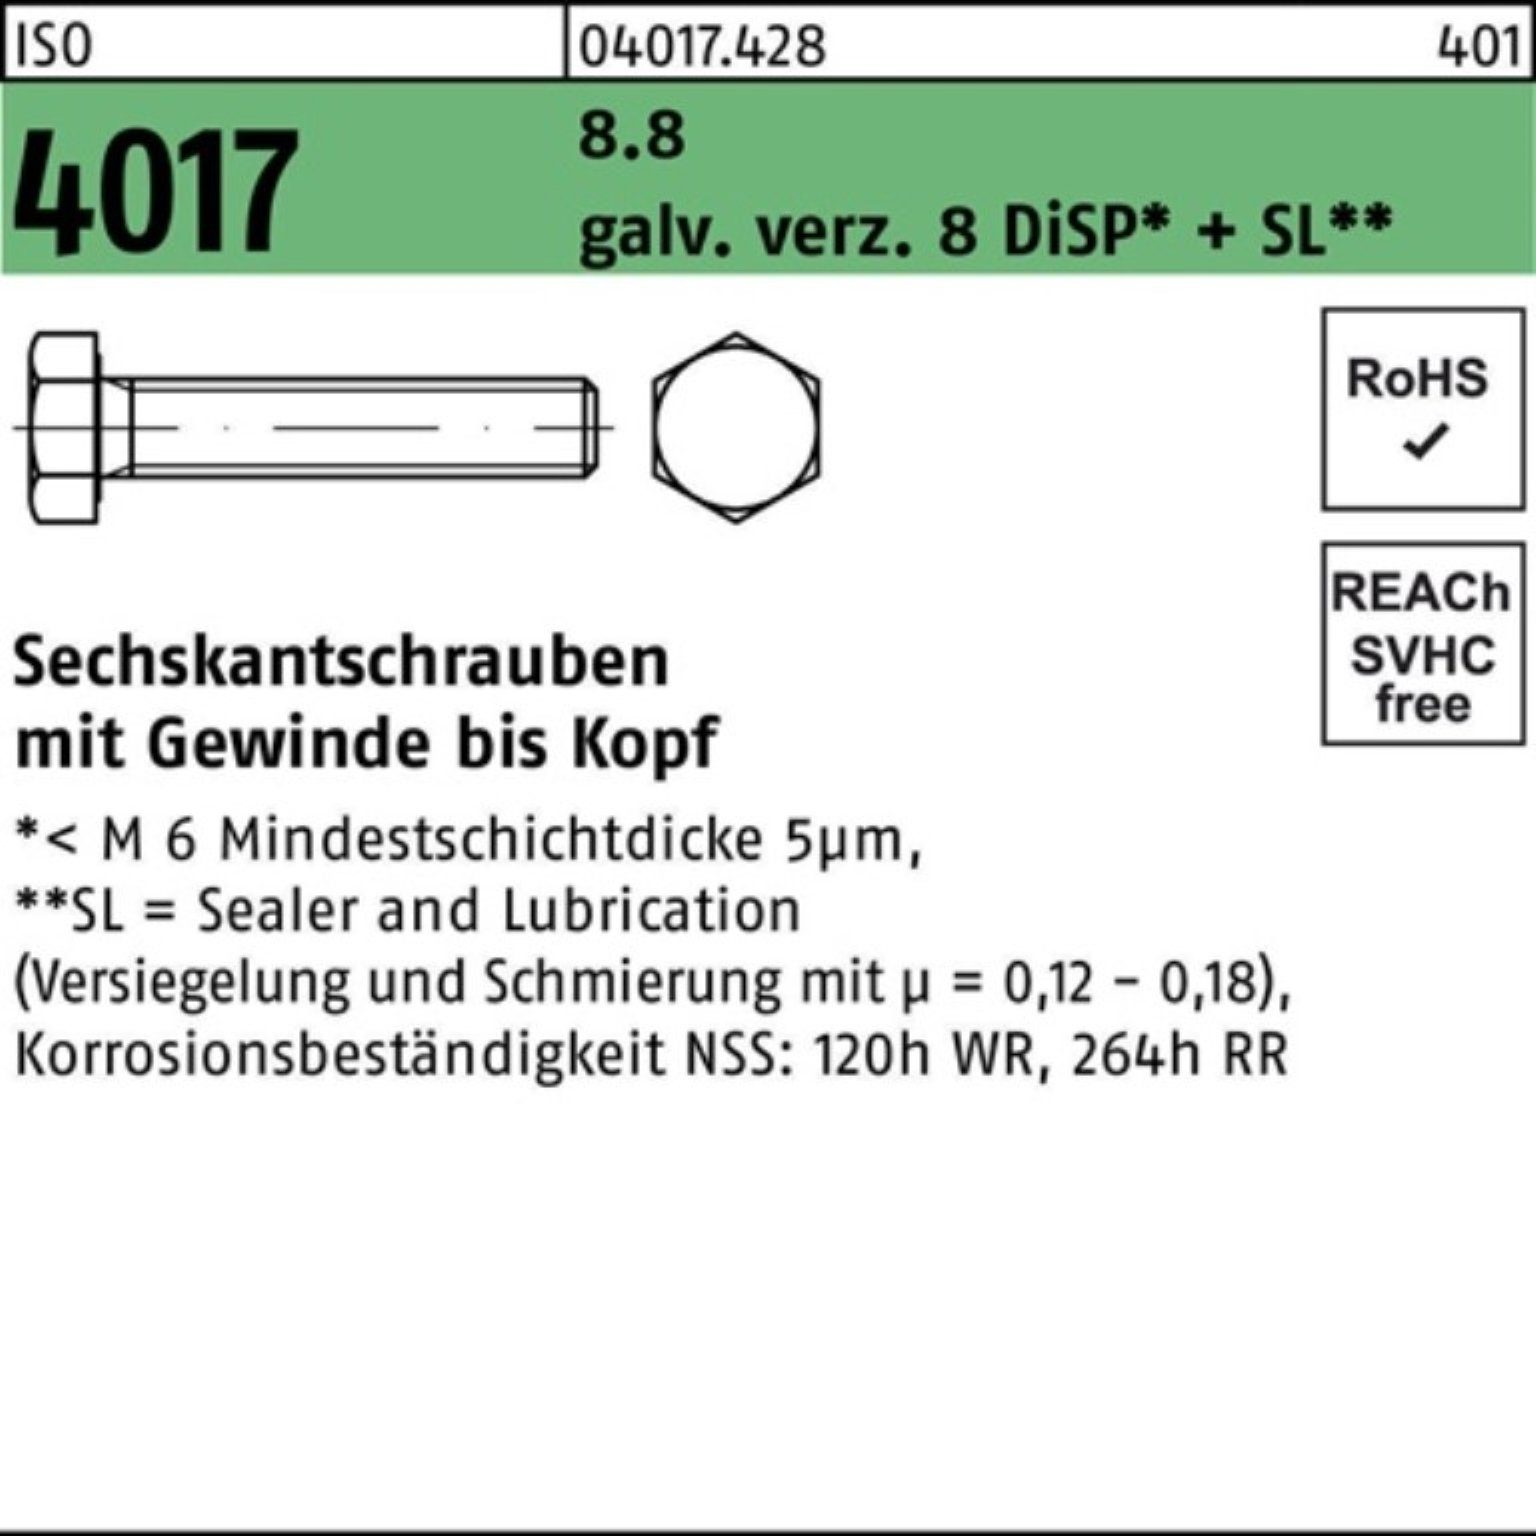 M6x 500er ISO VG 4017 8 Pack Bufab DiSP+ galv.verz. 18 Sechskantschraube Sechskantschraube 8.8